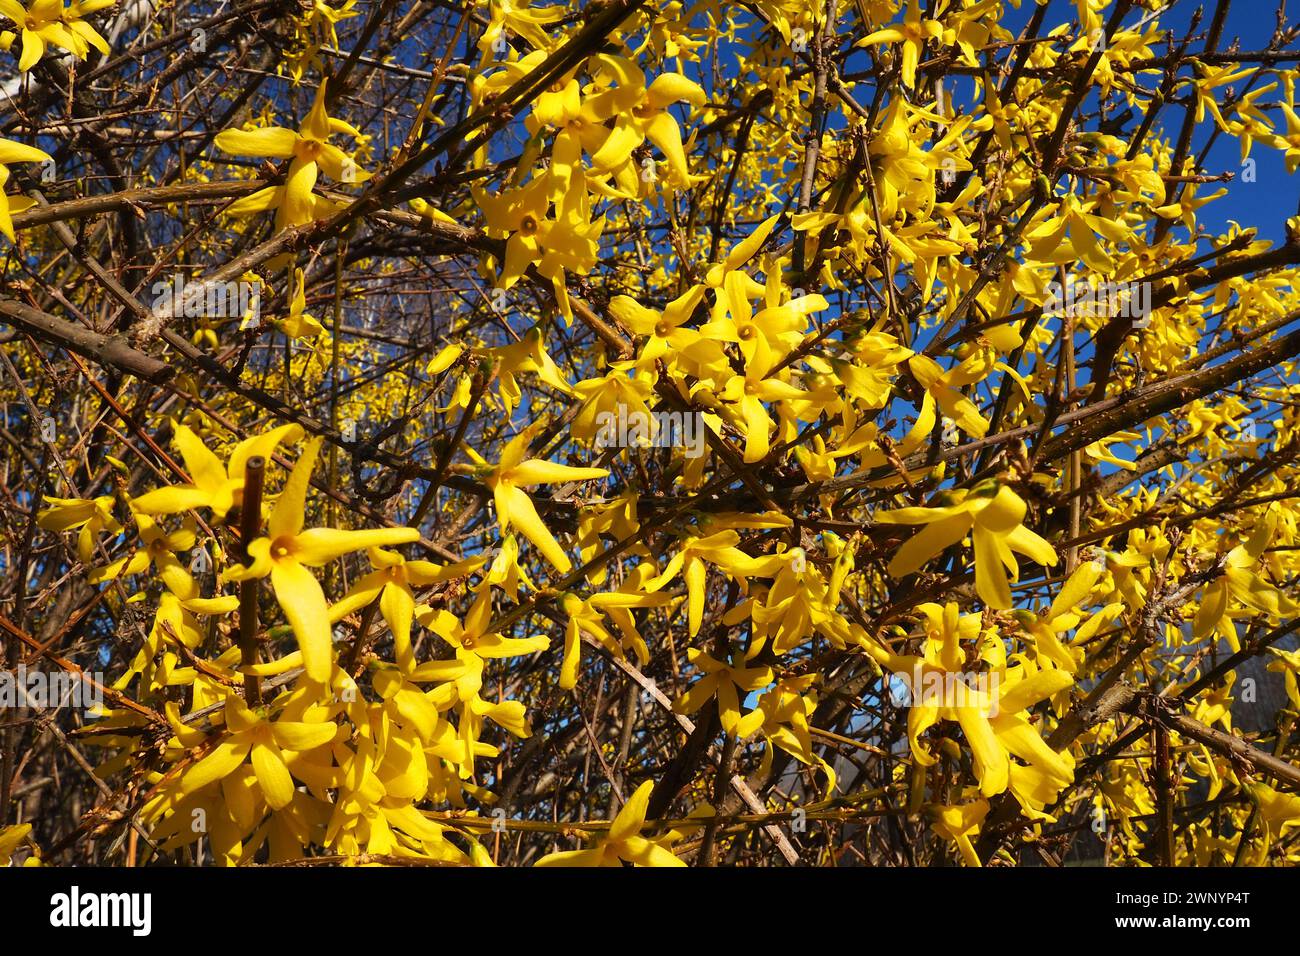 Forsythia est un genre d'arbustes et de petits arbres de la famille des oliviers. Nombreuses fleurs jaunes sur les branches et les pousses. Classe ordre dicotylédone Banque D'Images